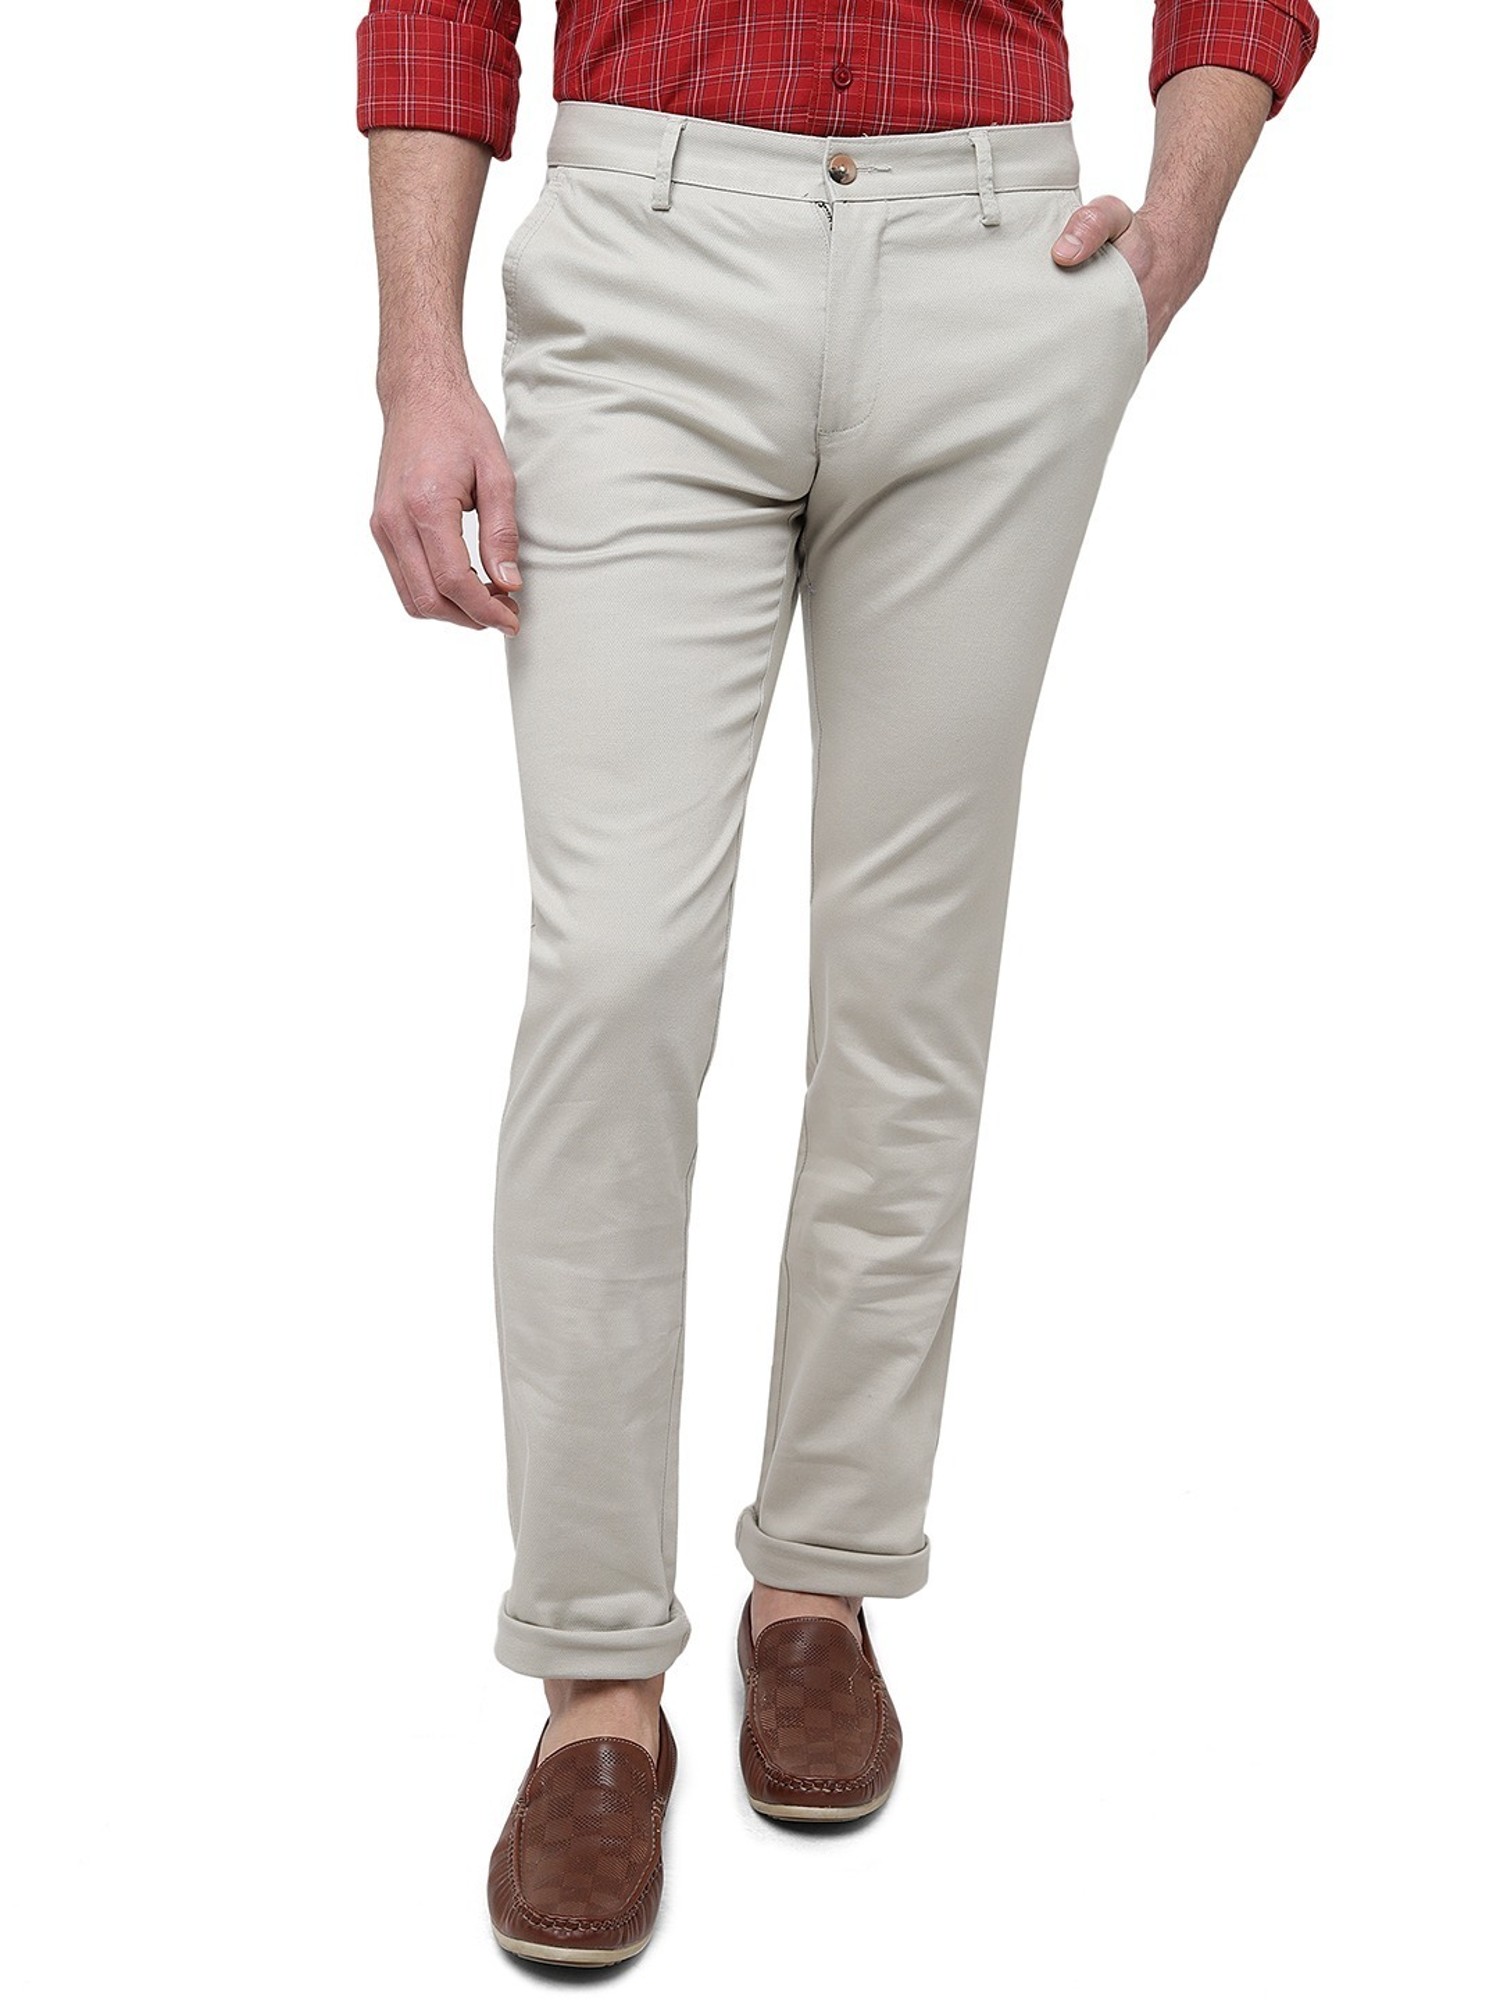 Cream Colour Travis Finch Black Casual Pant For Men Trouser  Strech Cotton  Pant Size 36  BjackCollections